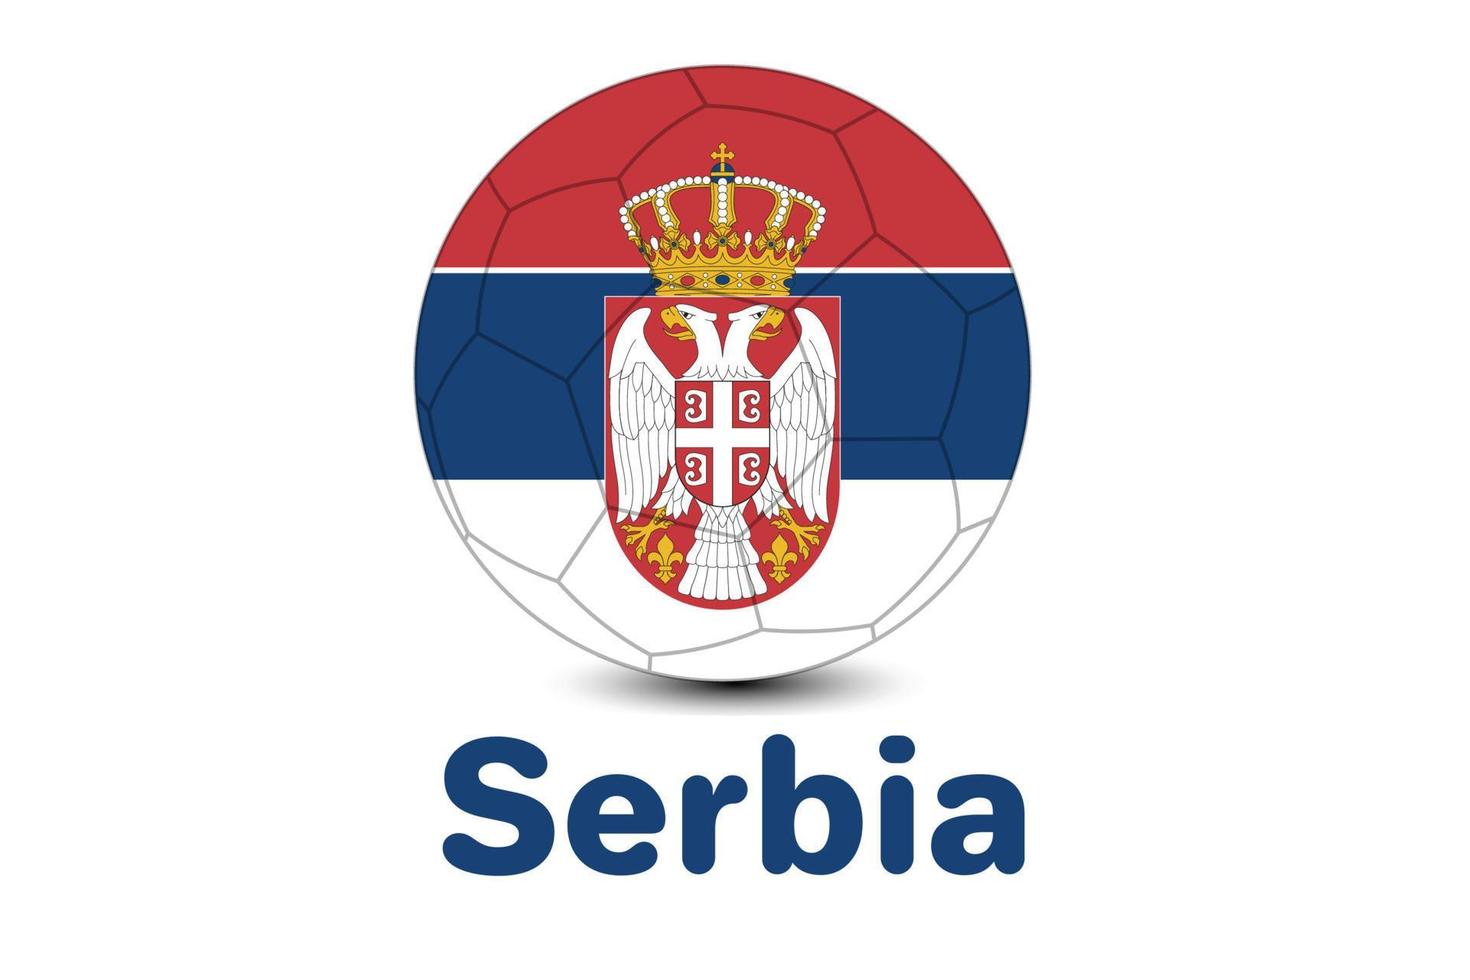 qatar worldcup football 2022 con bandera serbia. copa del mundo qatar 2022. ilustración de la bandera de serbia. vector